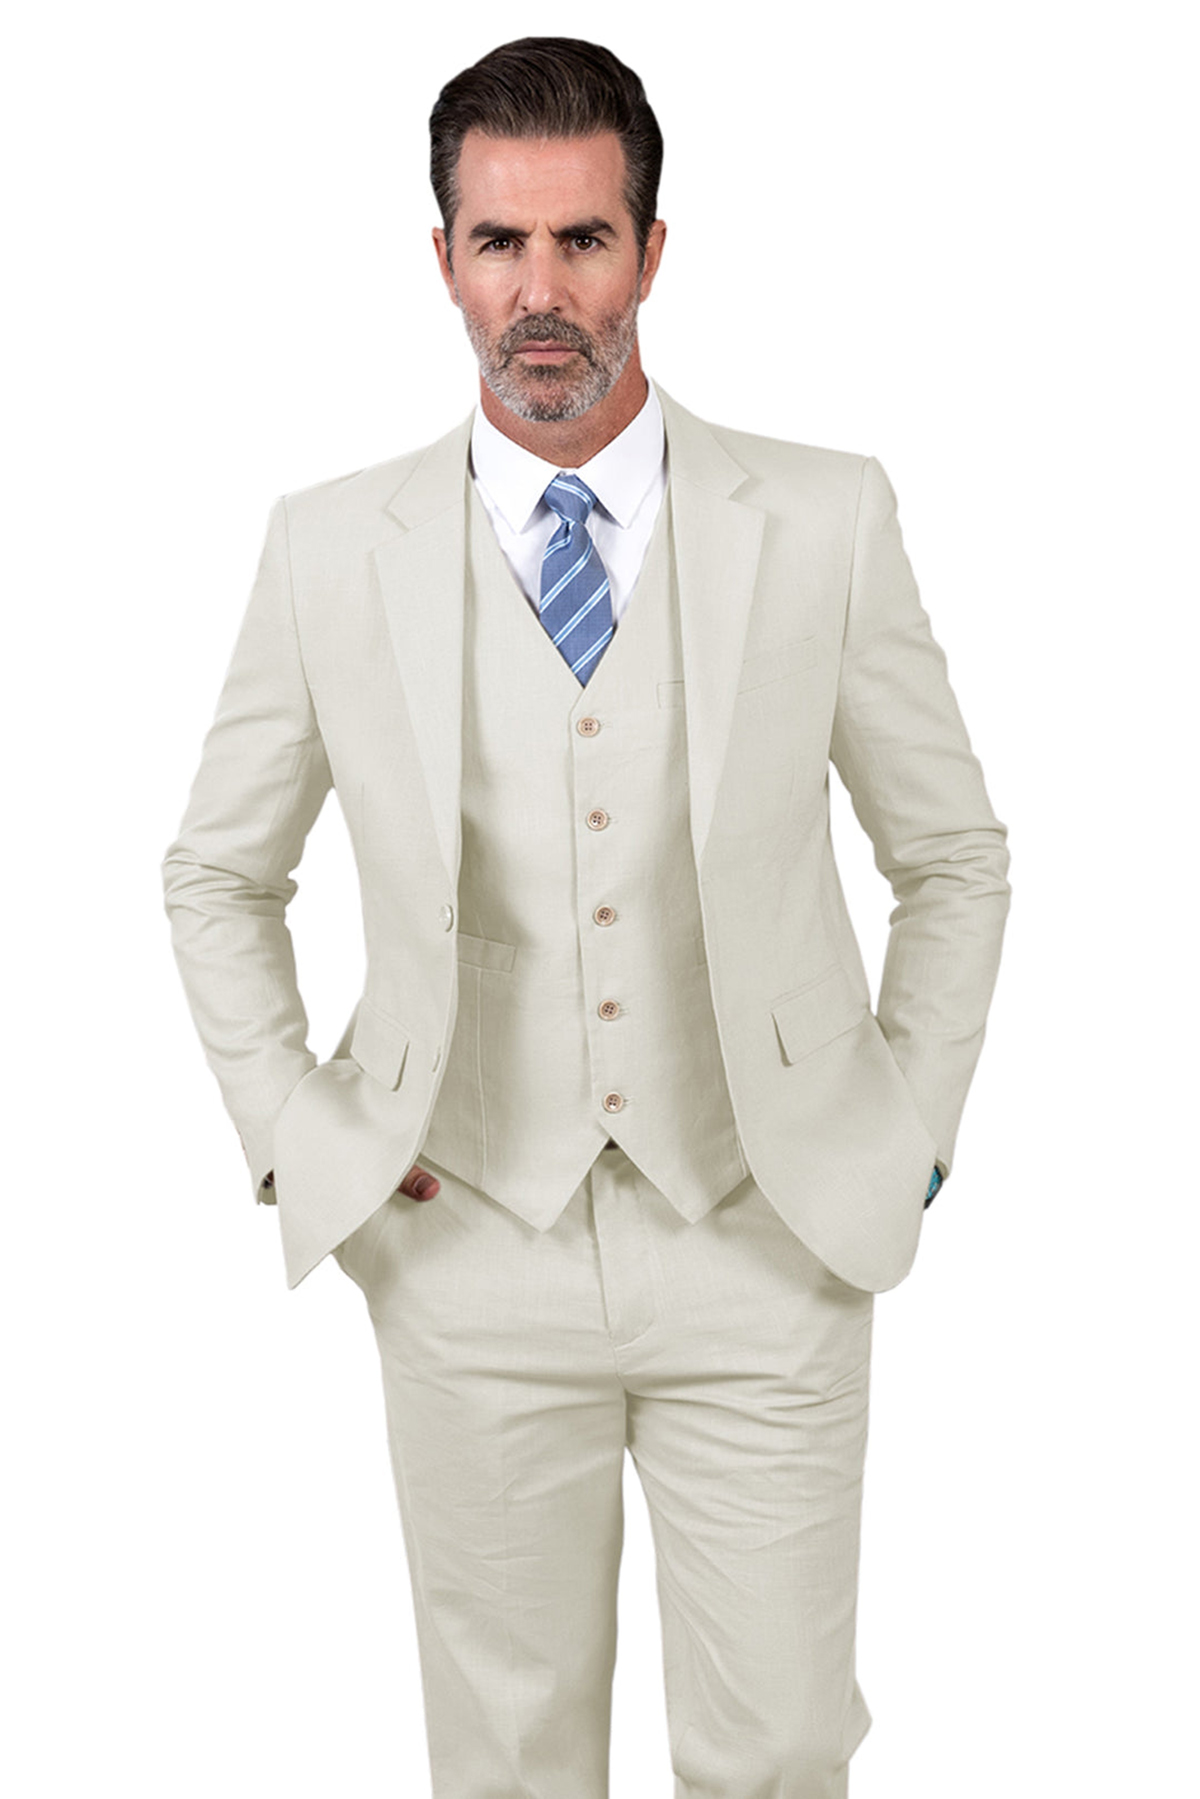 Neuer Stil-Anzug für Hochzeit, gekerbtes Revers, Schlitz hinten, zwei Knöpfe, Bräutigam-Smoking, Bräutigam-Anzug, 3-teilig Blazer, Weste, Hose, Anzüge, Smoking, reine Farbe, individuelle Größe